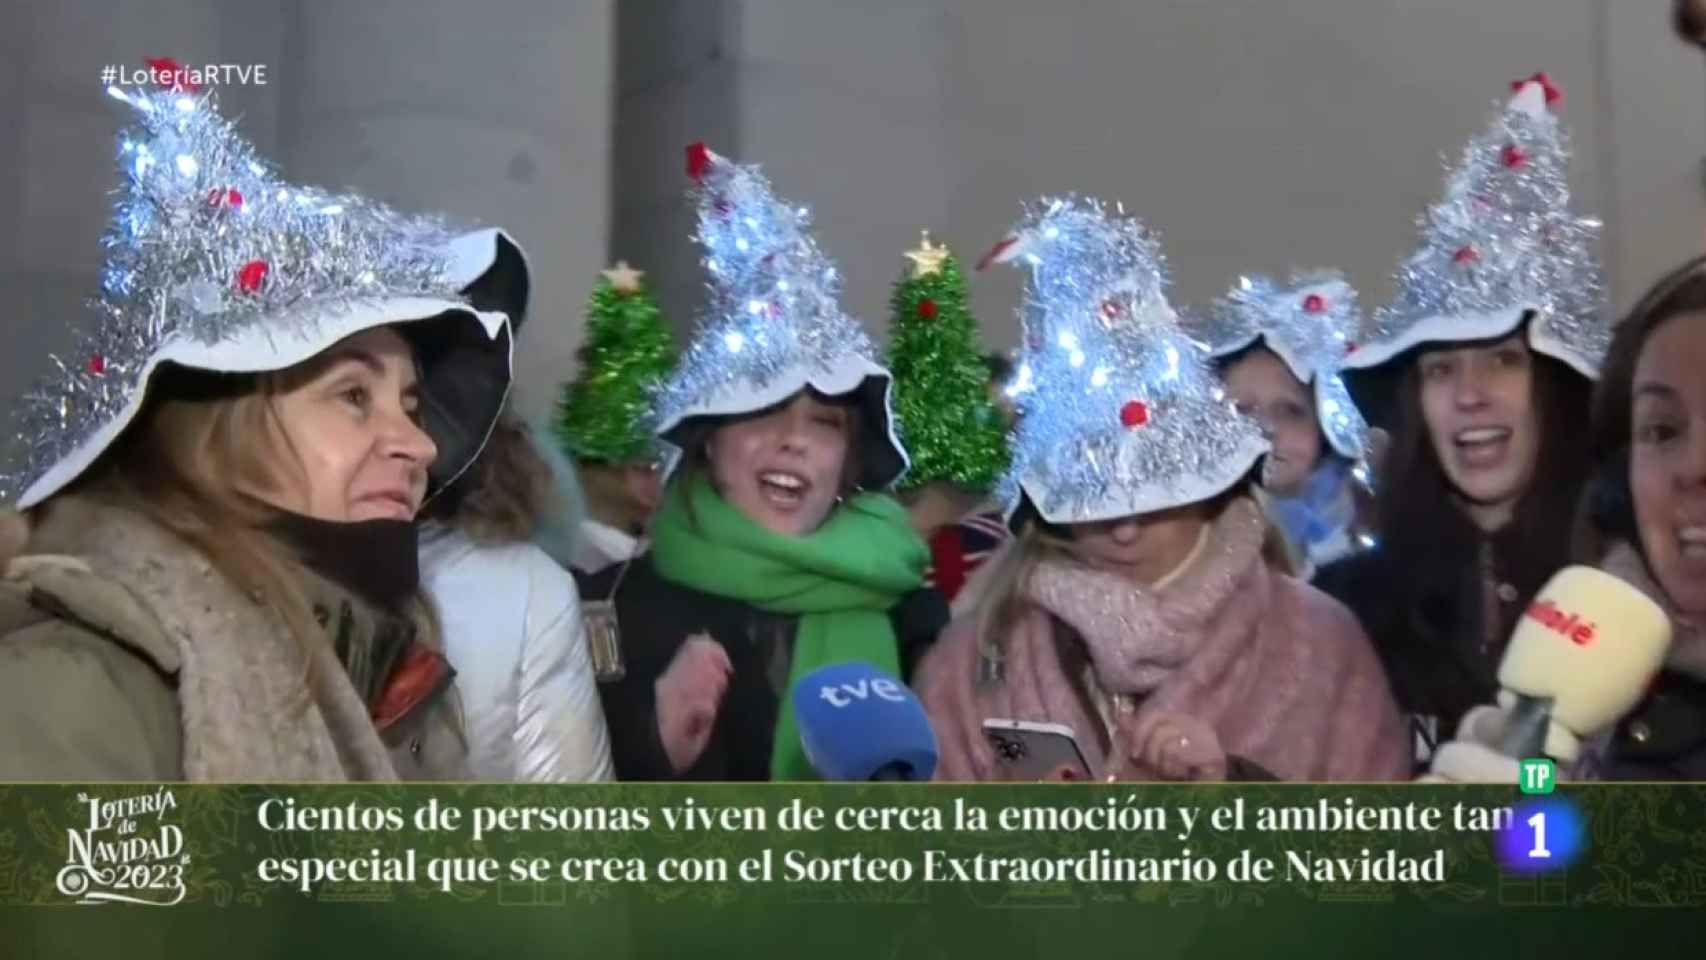 Cobertura de La 1 de TVE de la Lotería de Navidad.